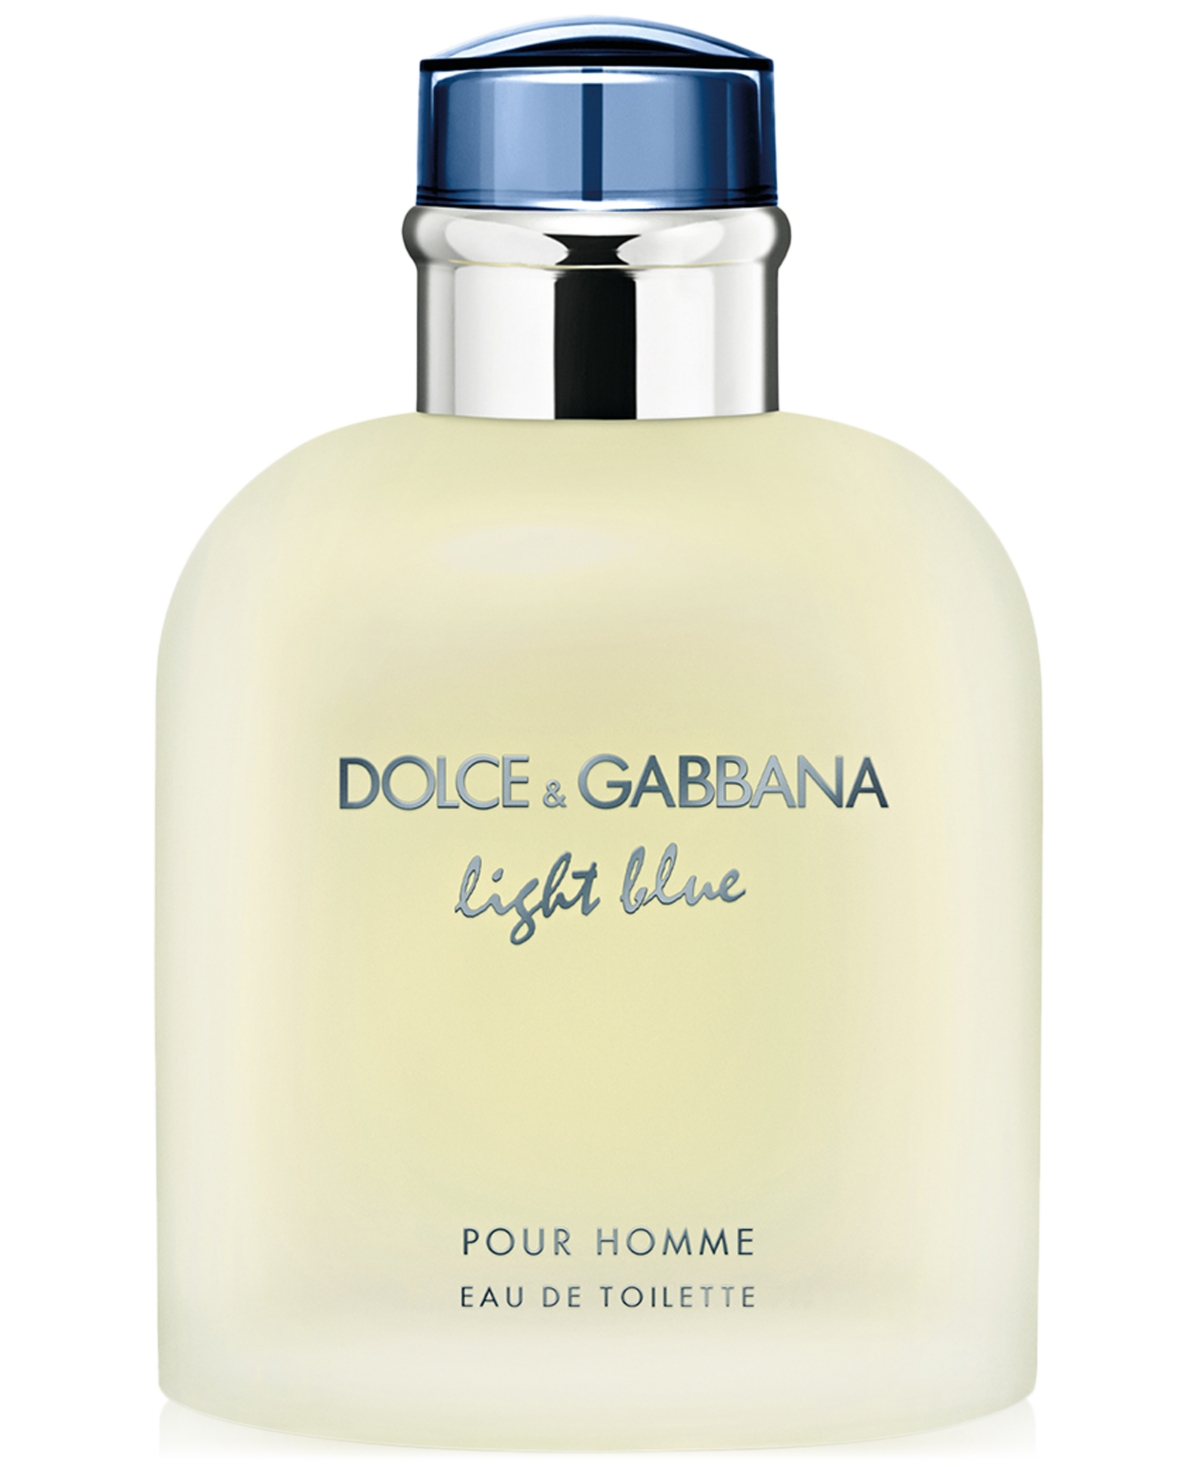 Dolce&Gabbana Men's Light Blue Pour Homme Eau de Toilette Spray, 4.2 oz.